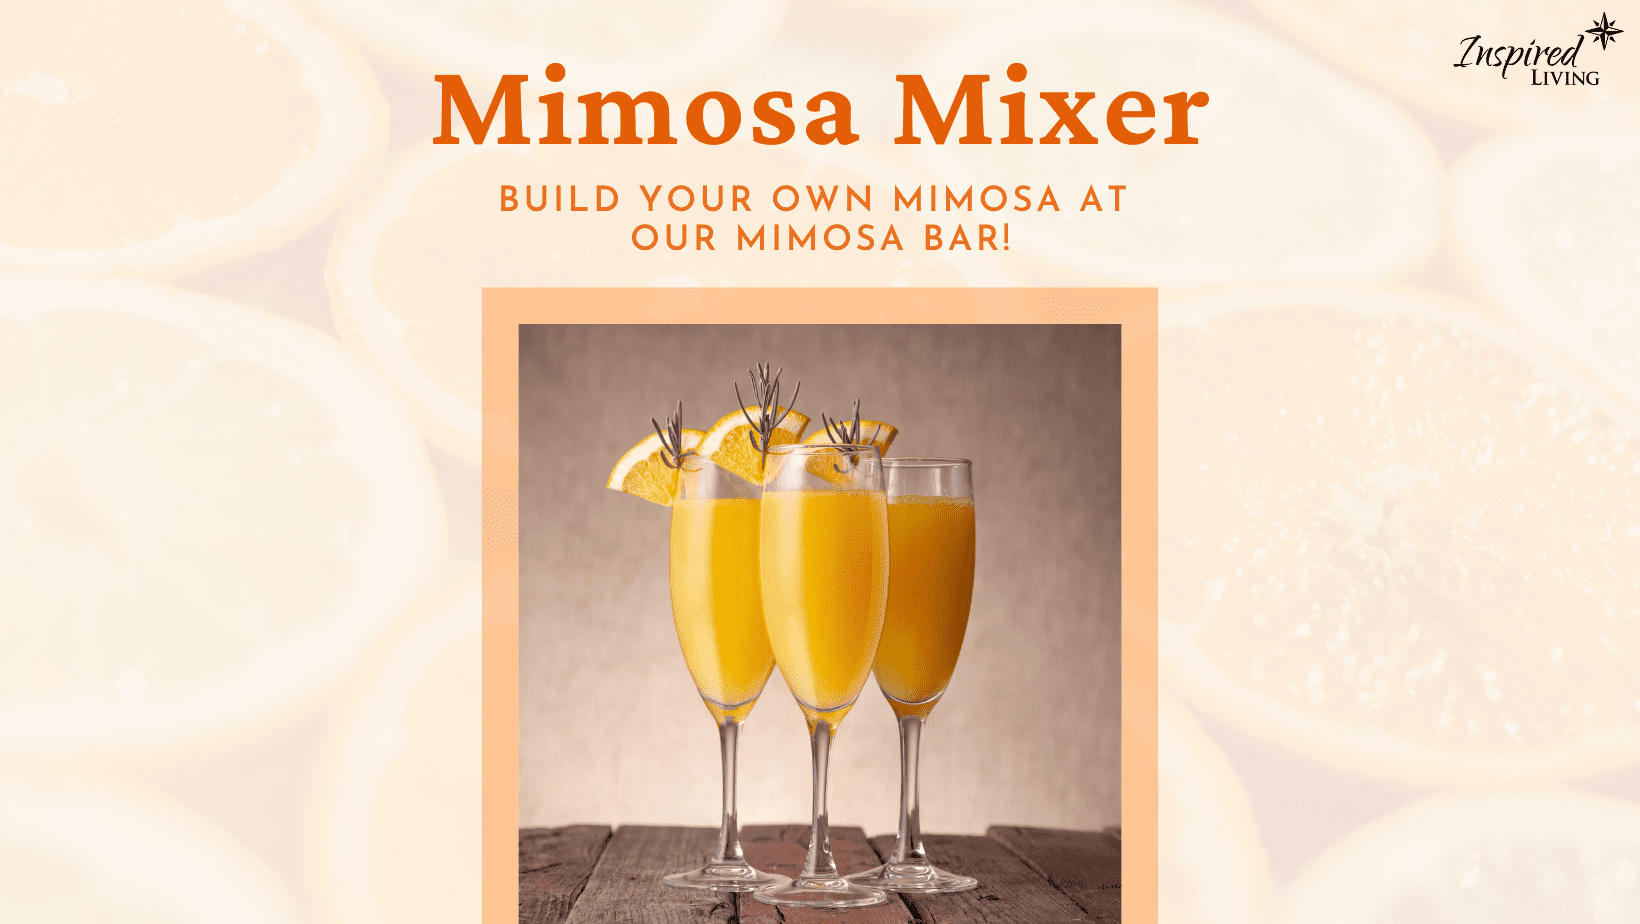 Mimosa Mixer Alpharetta Facebook Cover